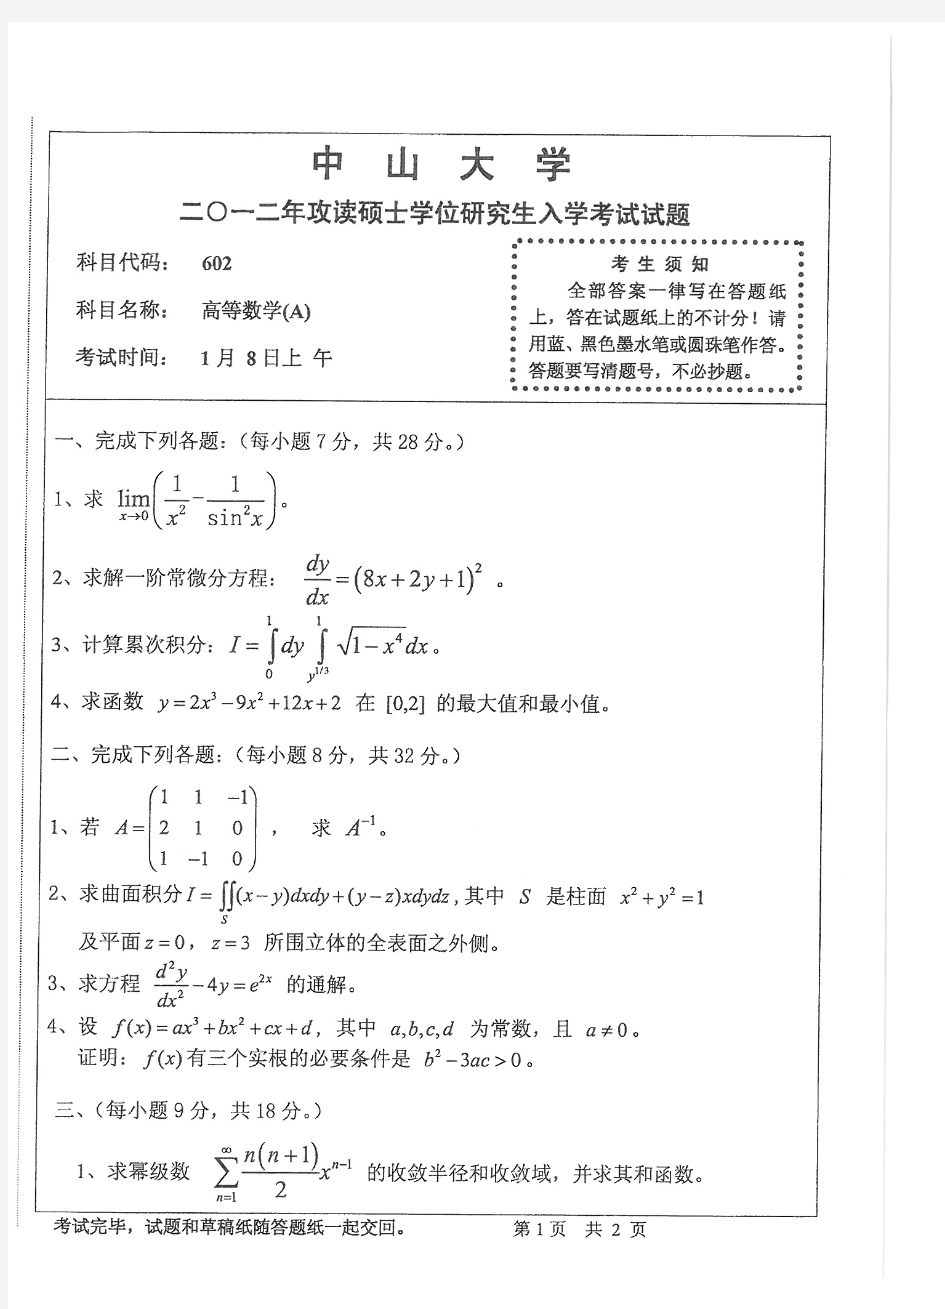 2012年中山大学高等数学(A)考研试题